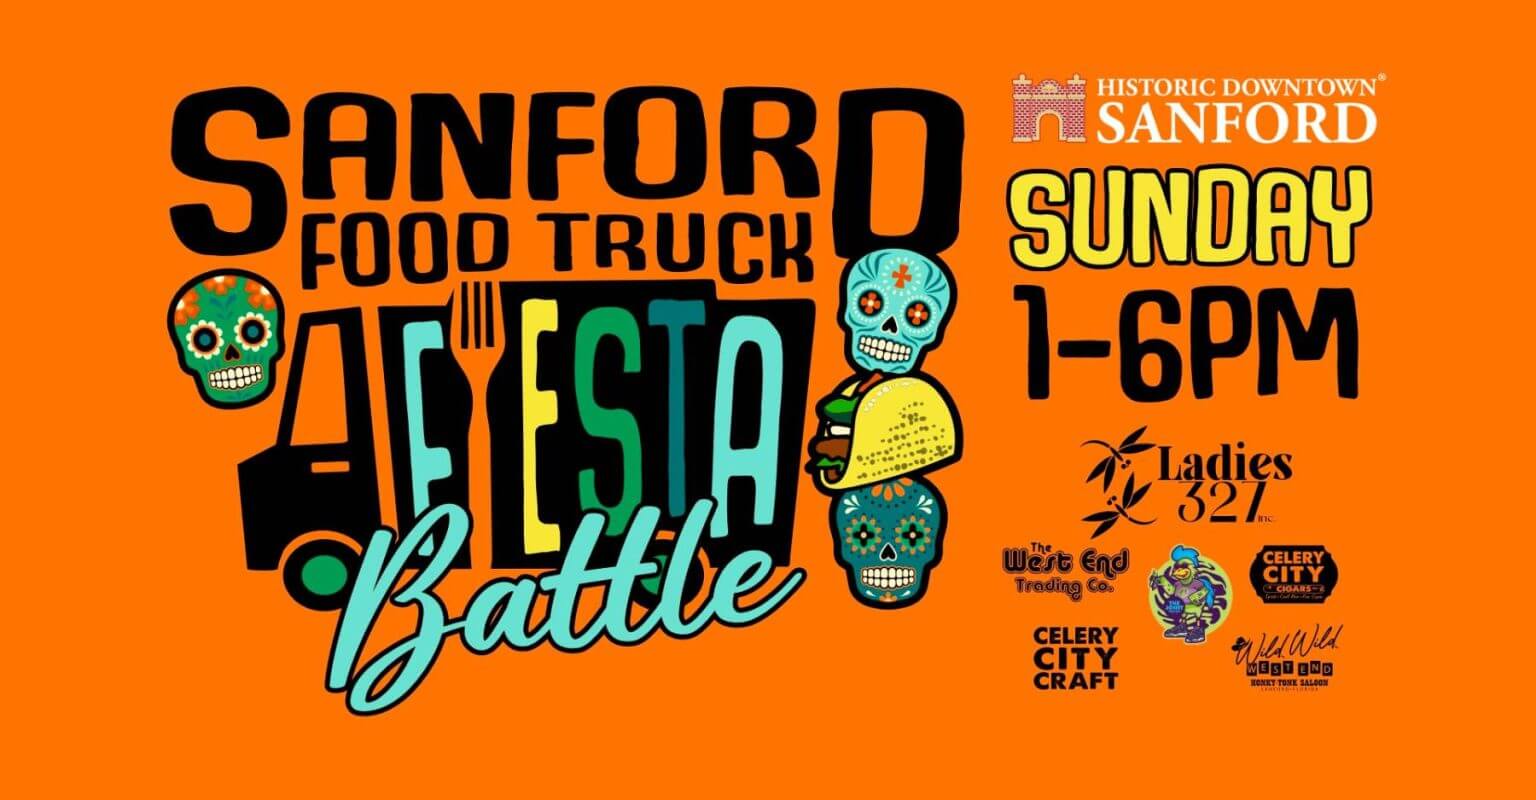 Sanford Battle of Food Trucks promotional flyer